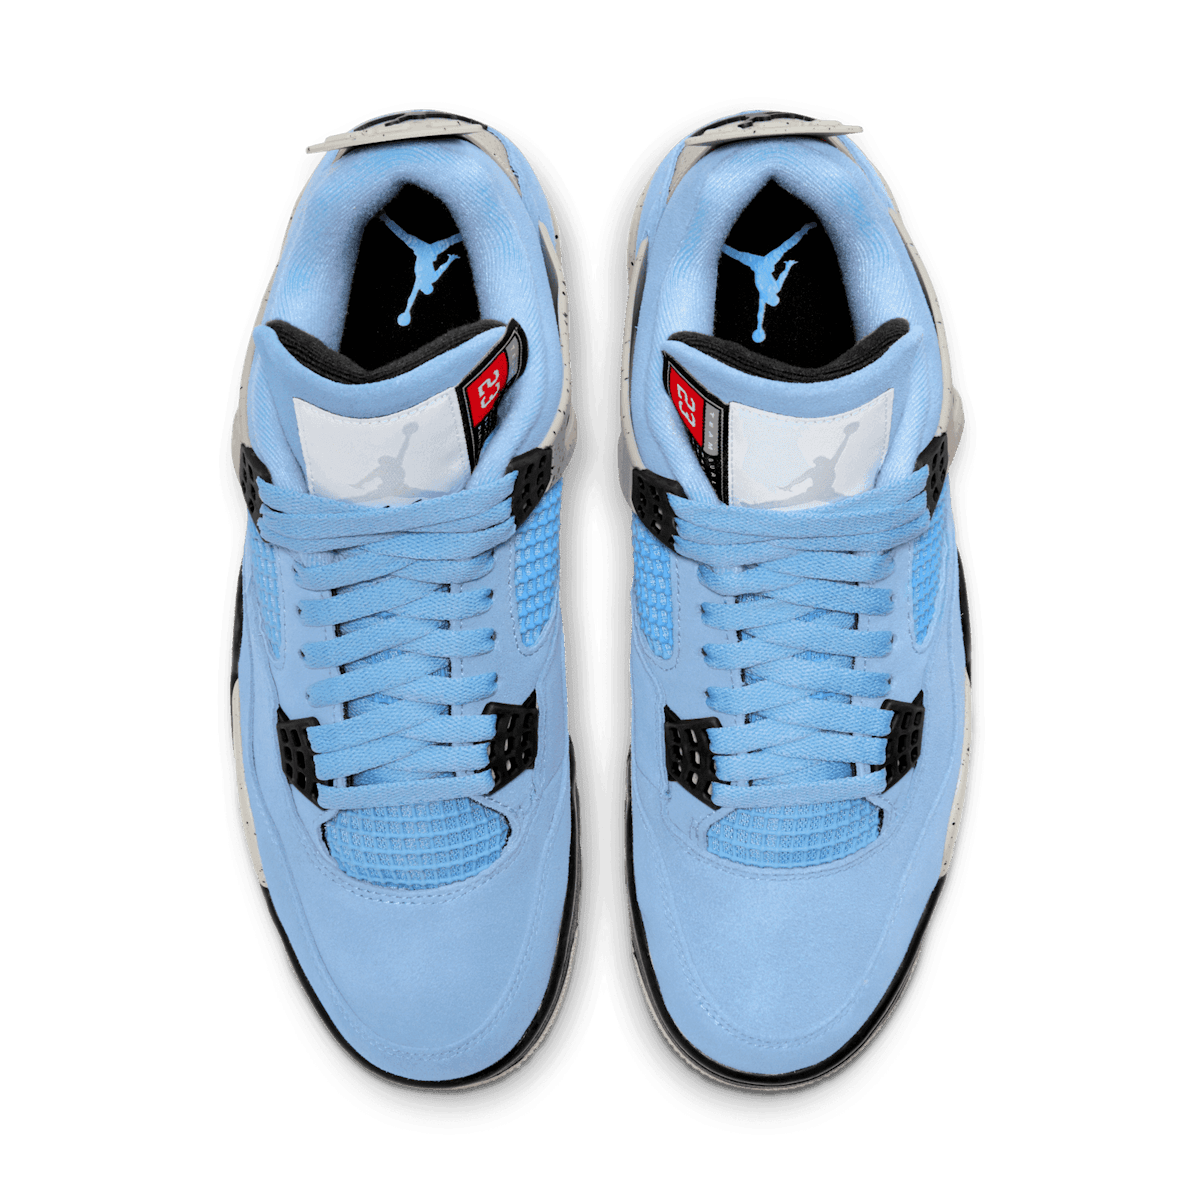 Air Jordan Retro 4 University Blue